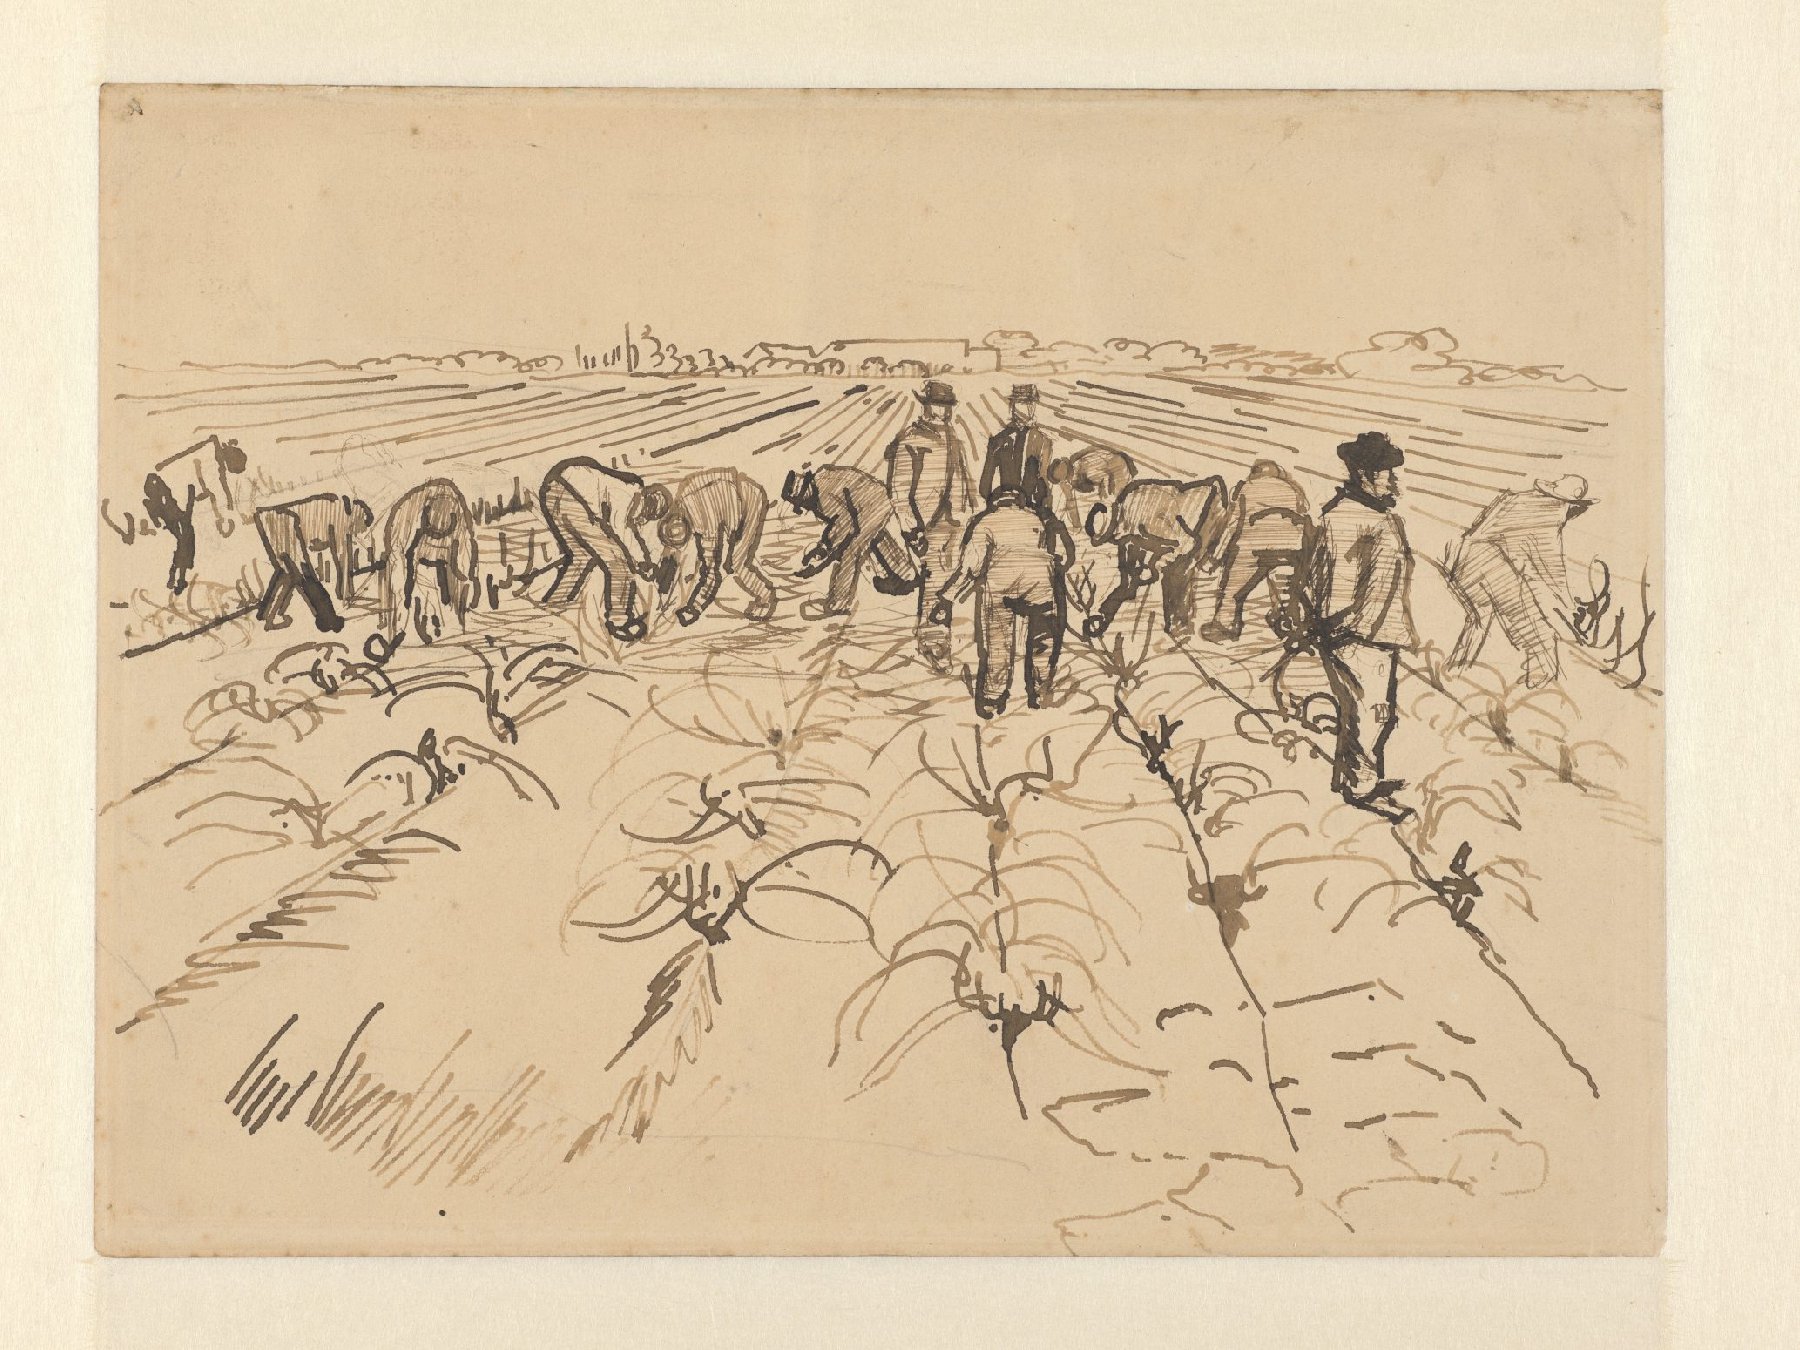 Figuren op het land Vincent van Gogh (1853 - 1890), Arles, maart 1888